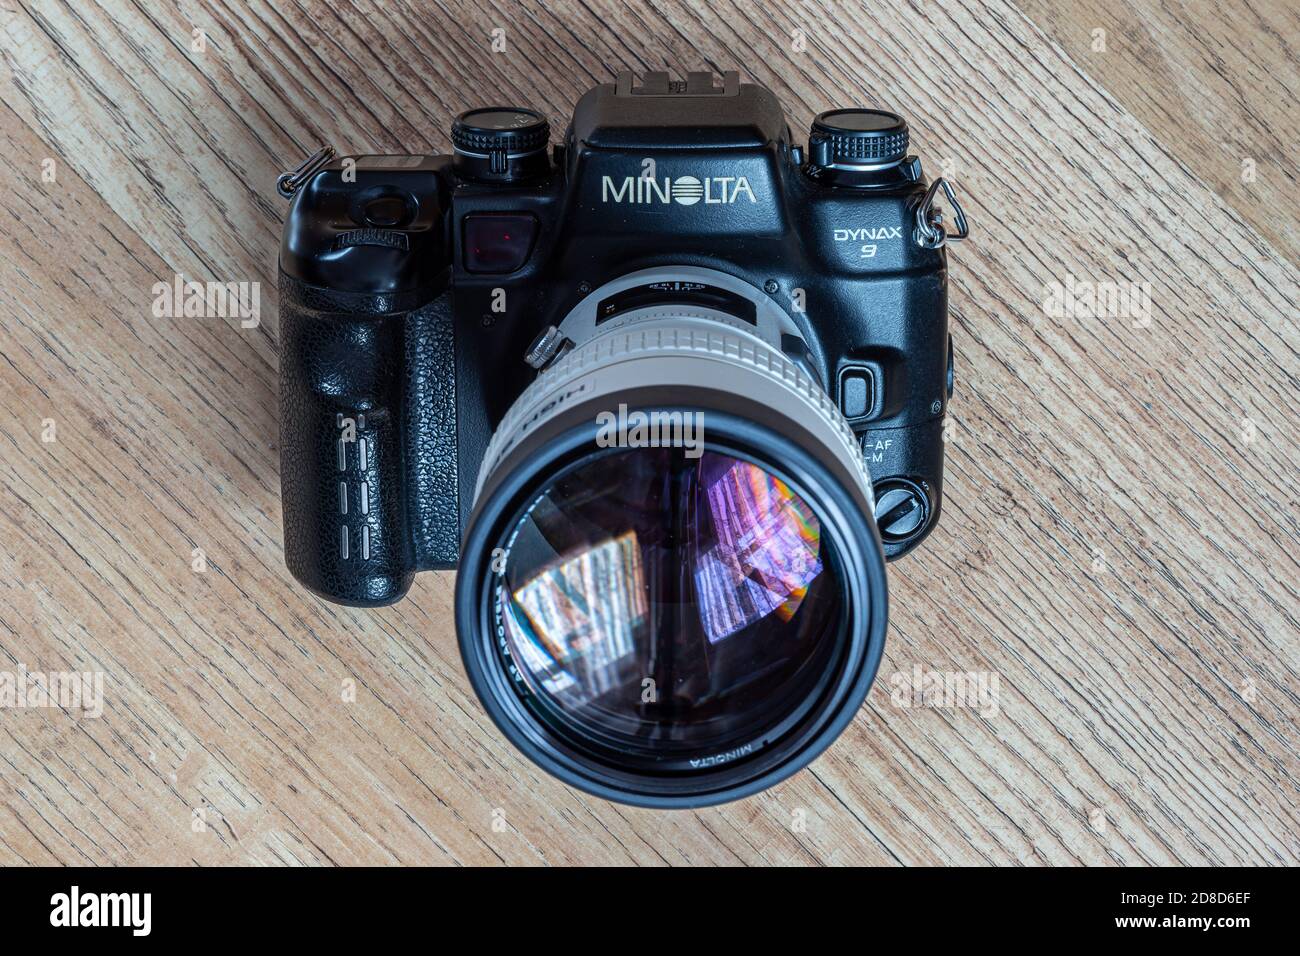 Minolta Classic fotocamera reflex autofocus dagli anni '80 al anni '90 Foto Stock